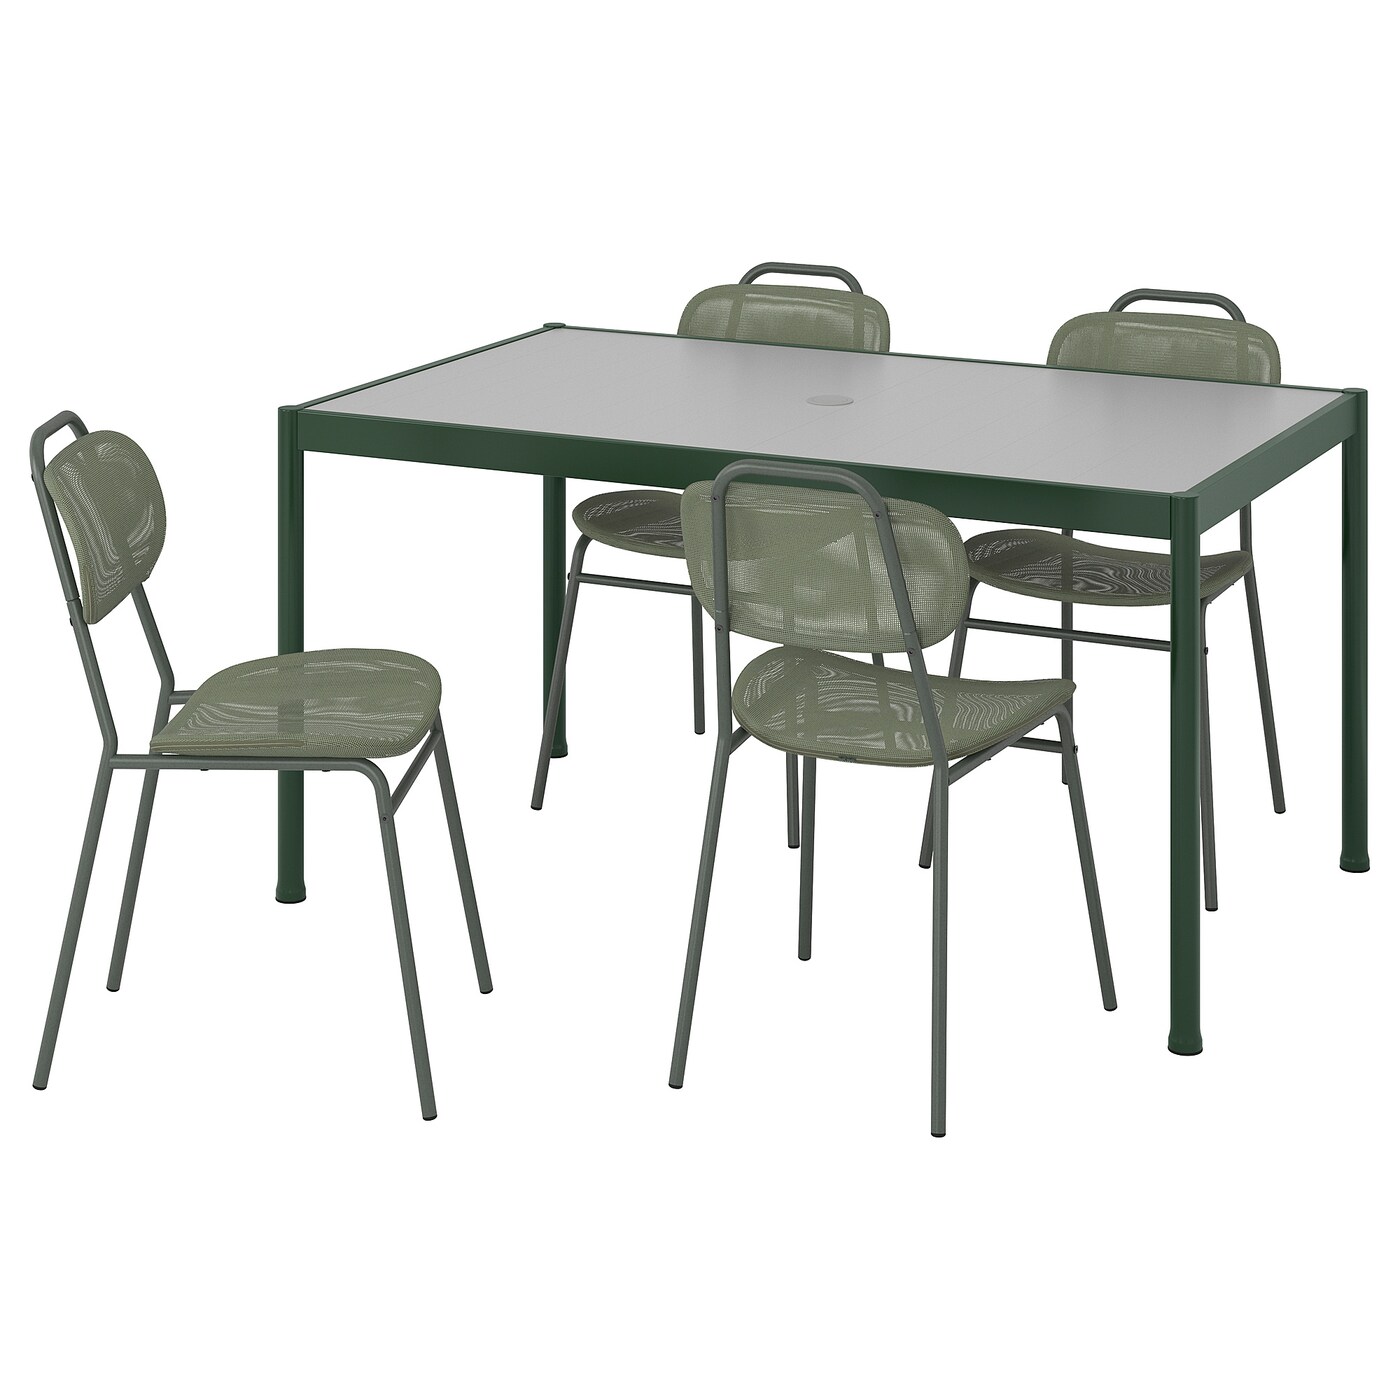 Стол и 4 стула - SEGERÖN / ENSHOLM / SEGERОN IKEA/ СЕГЕРОН/ ЭНШОЛЬН ИКЕА,  147см, зеленый